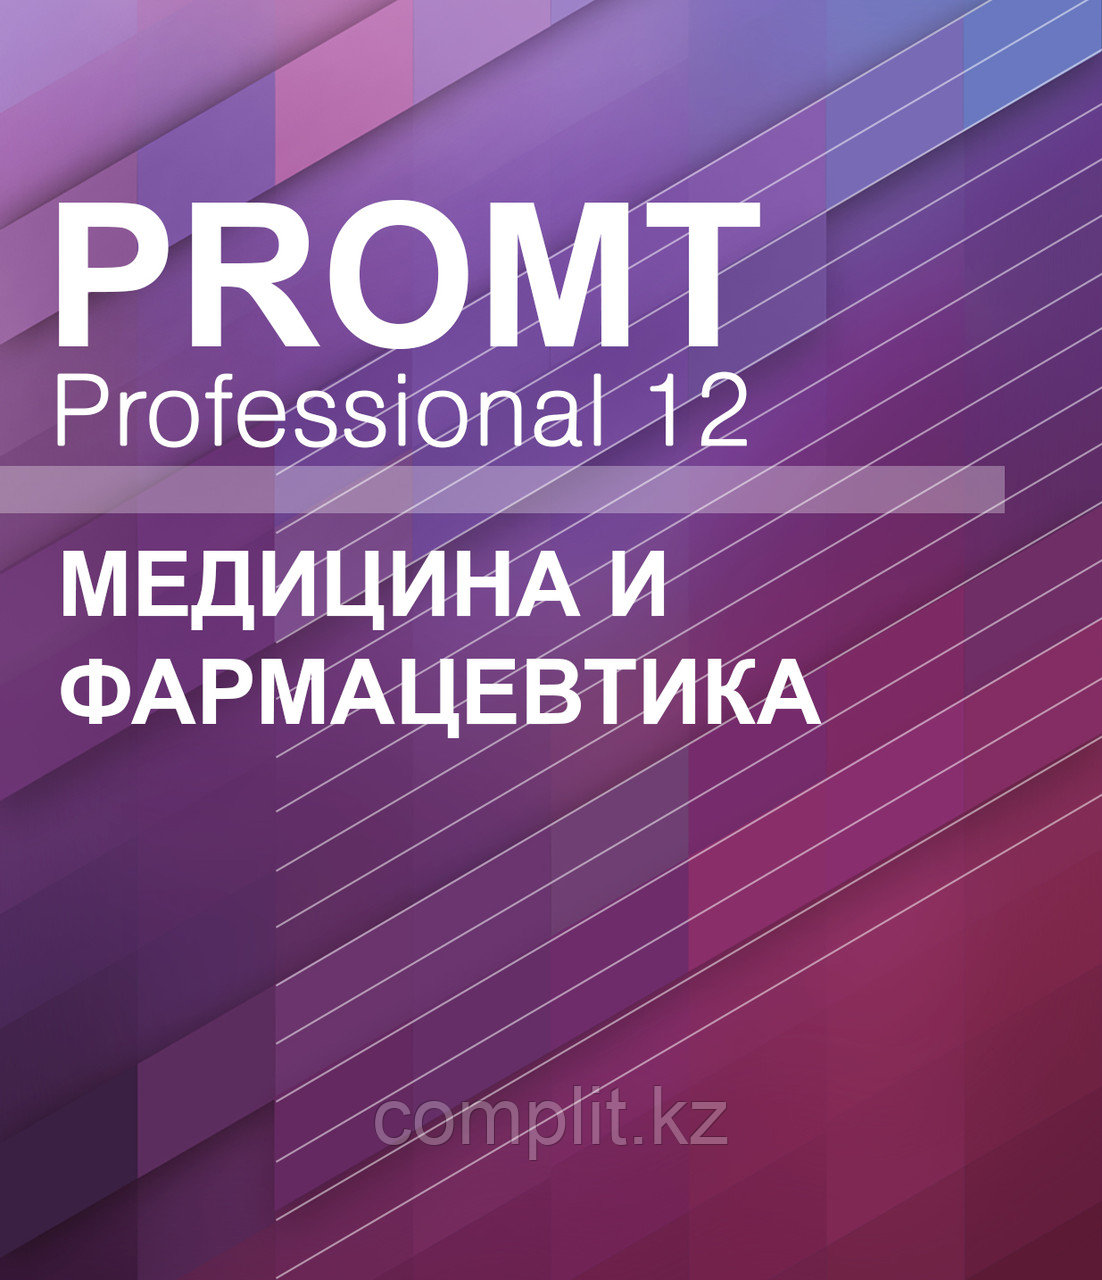 PROMT Professional 12 Медицина и фармацевтика